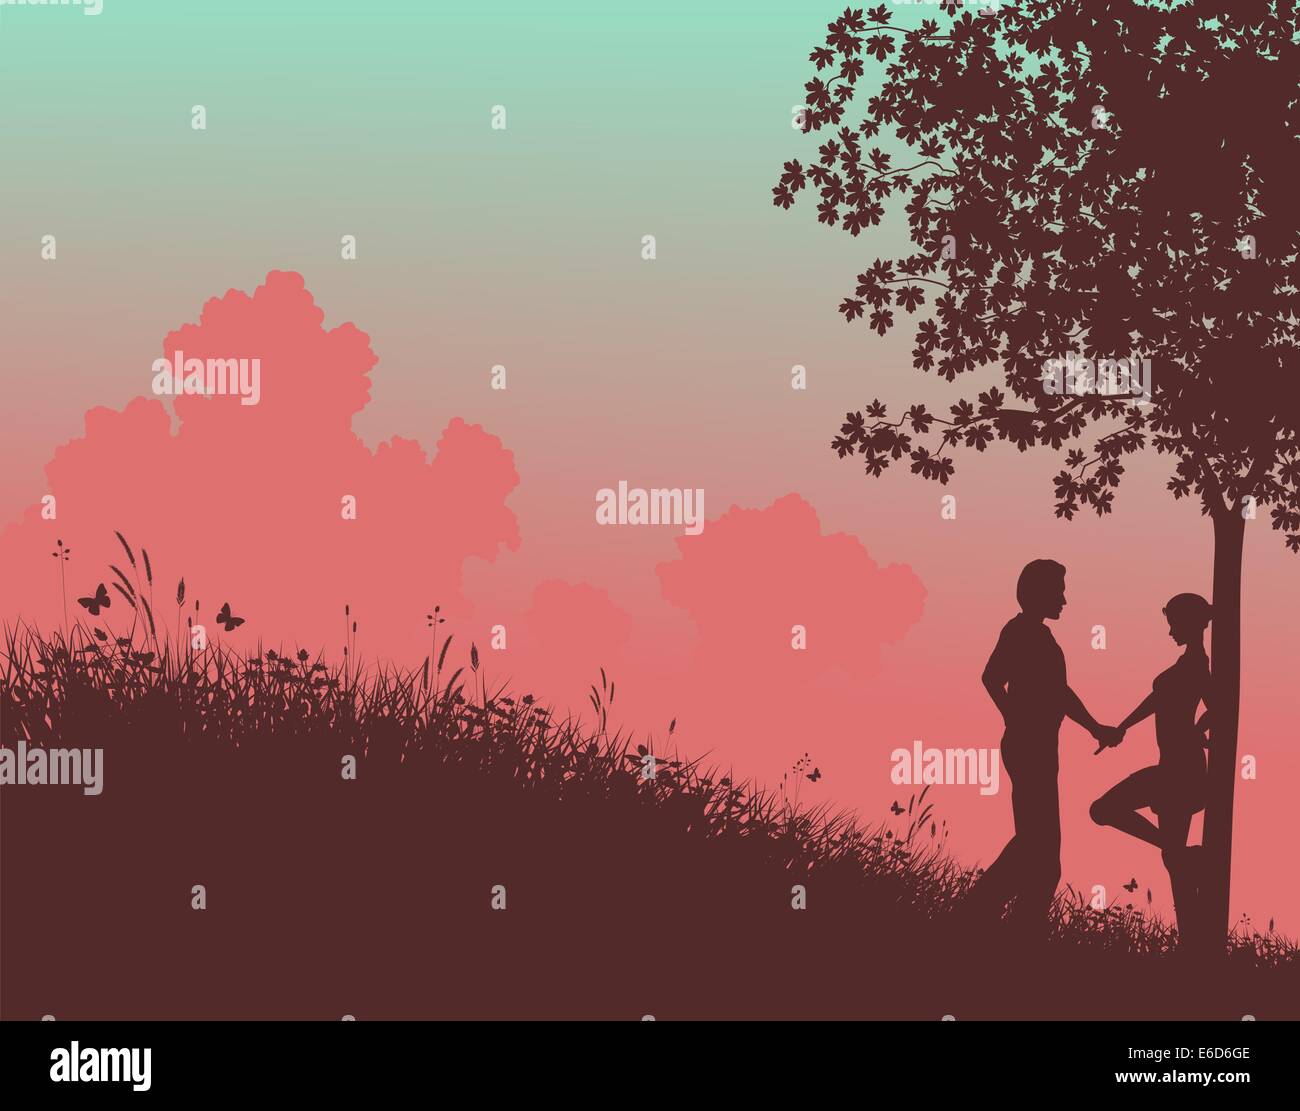 Vecteur modifiable silhouette d'un jeune couple dans un champ avec des gens, l'arbre et l'herbe comme éléments séparés Illustration de Vecteur